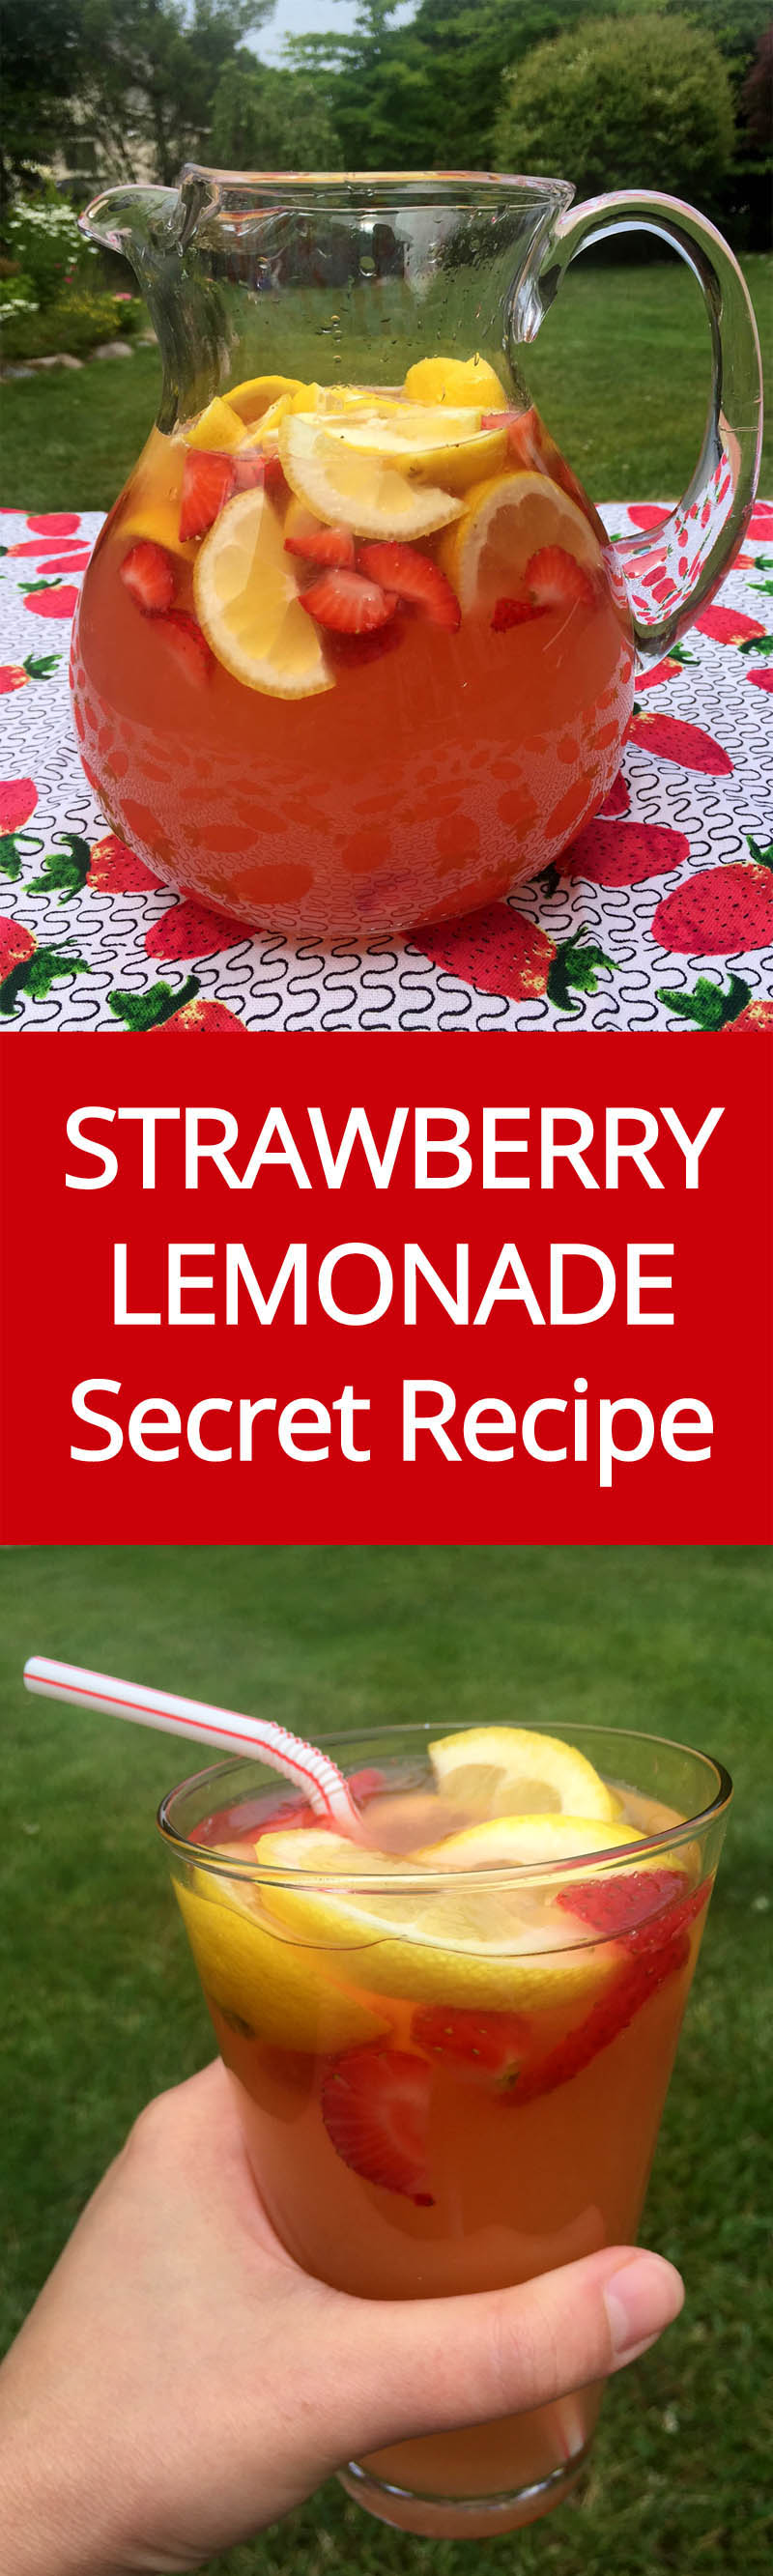 Homemade Strawberry Lemonade Recipe With Freshly Squeezed Lemons And Strawberry Slices | MelanieCooks.com